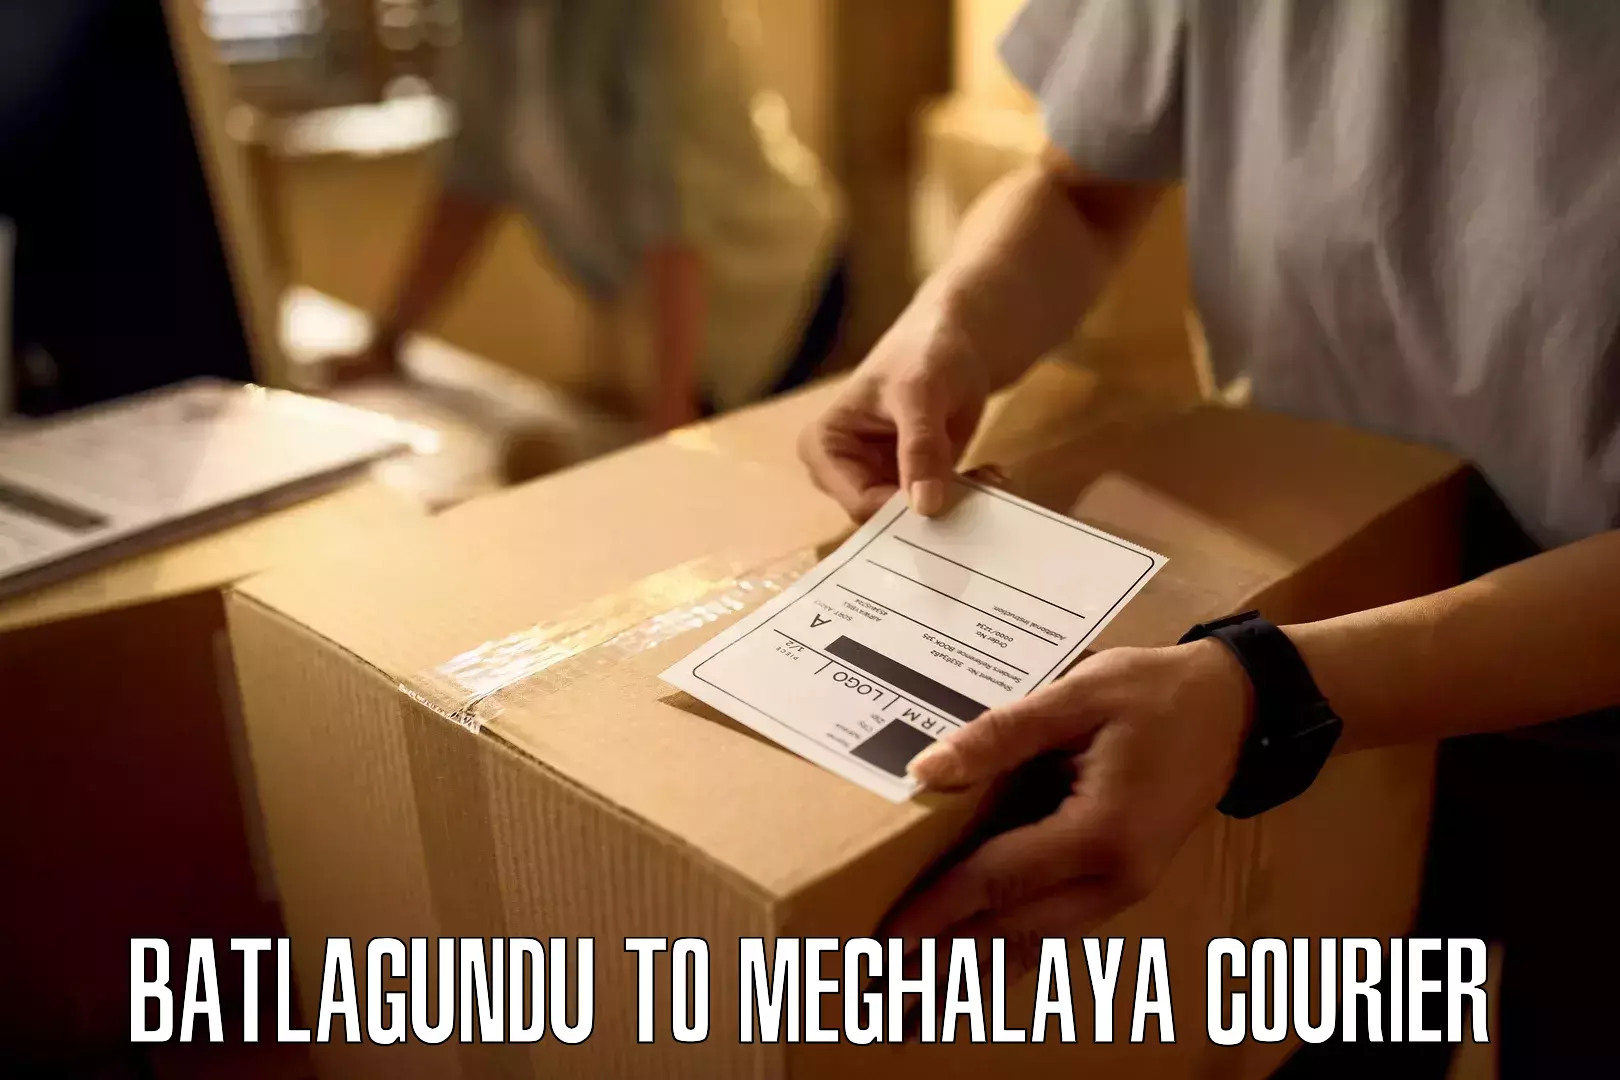 Courier service comparison Batlagundu to Dkhiah West